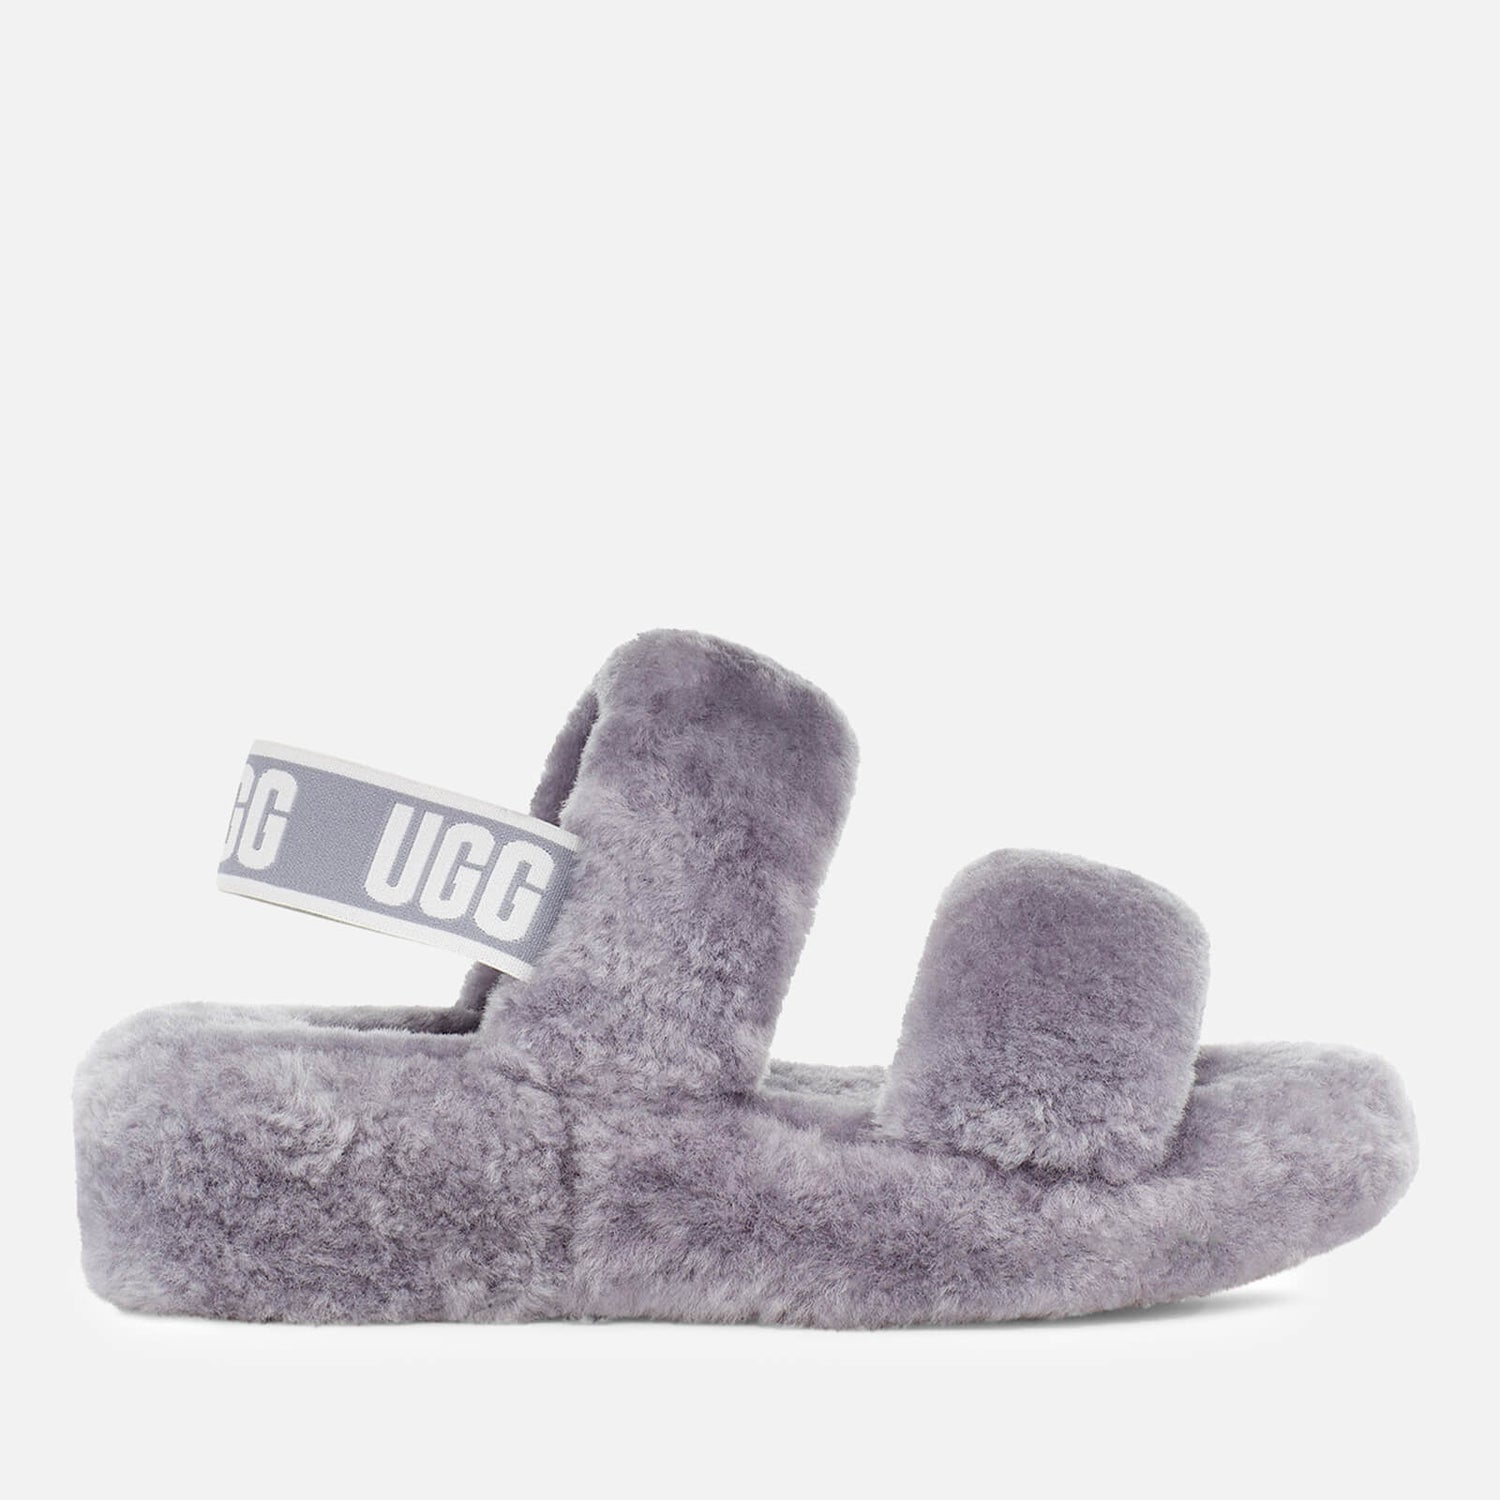 Buy > grey ugg slippers uk > in stock